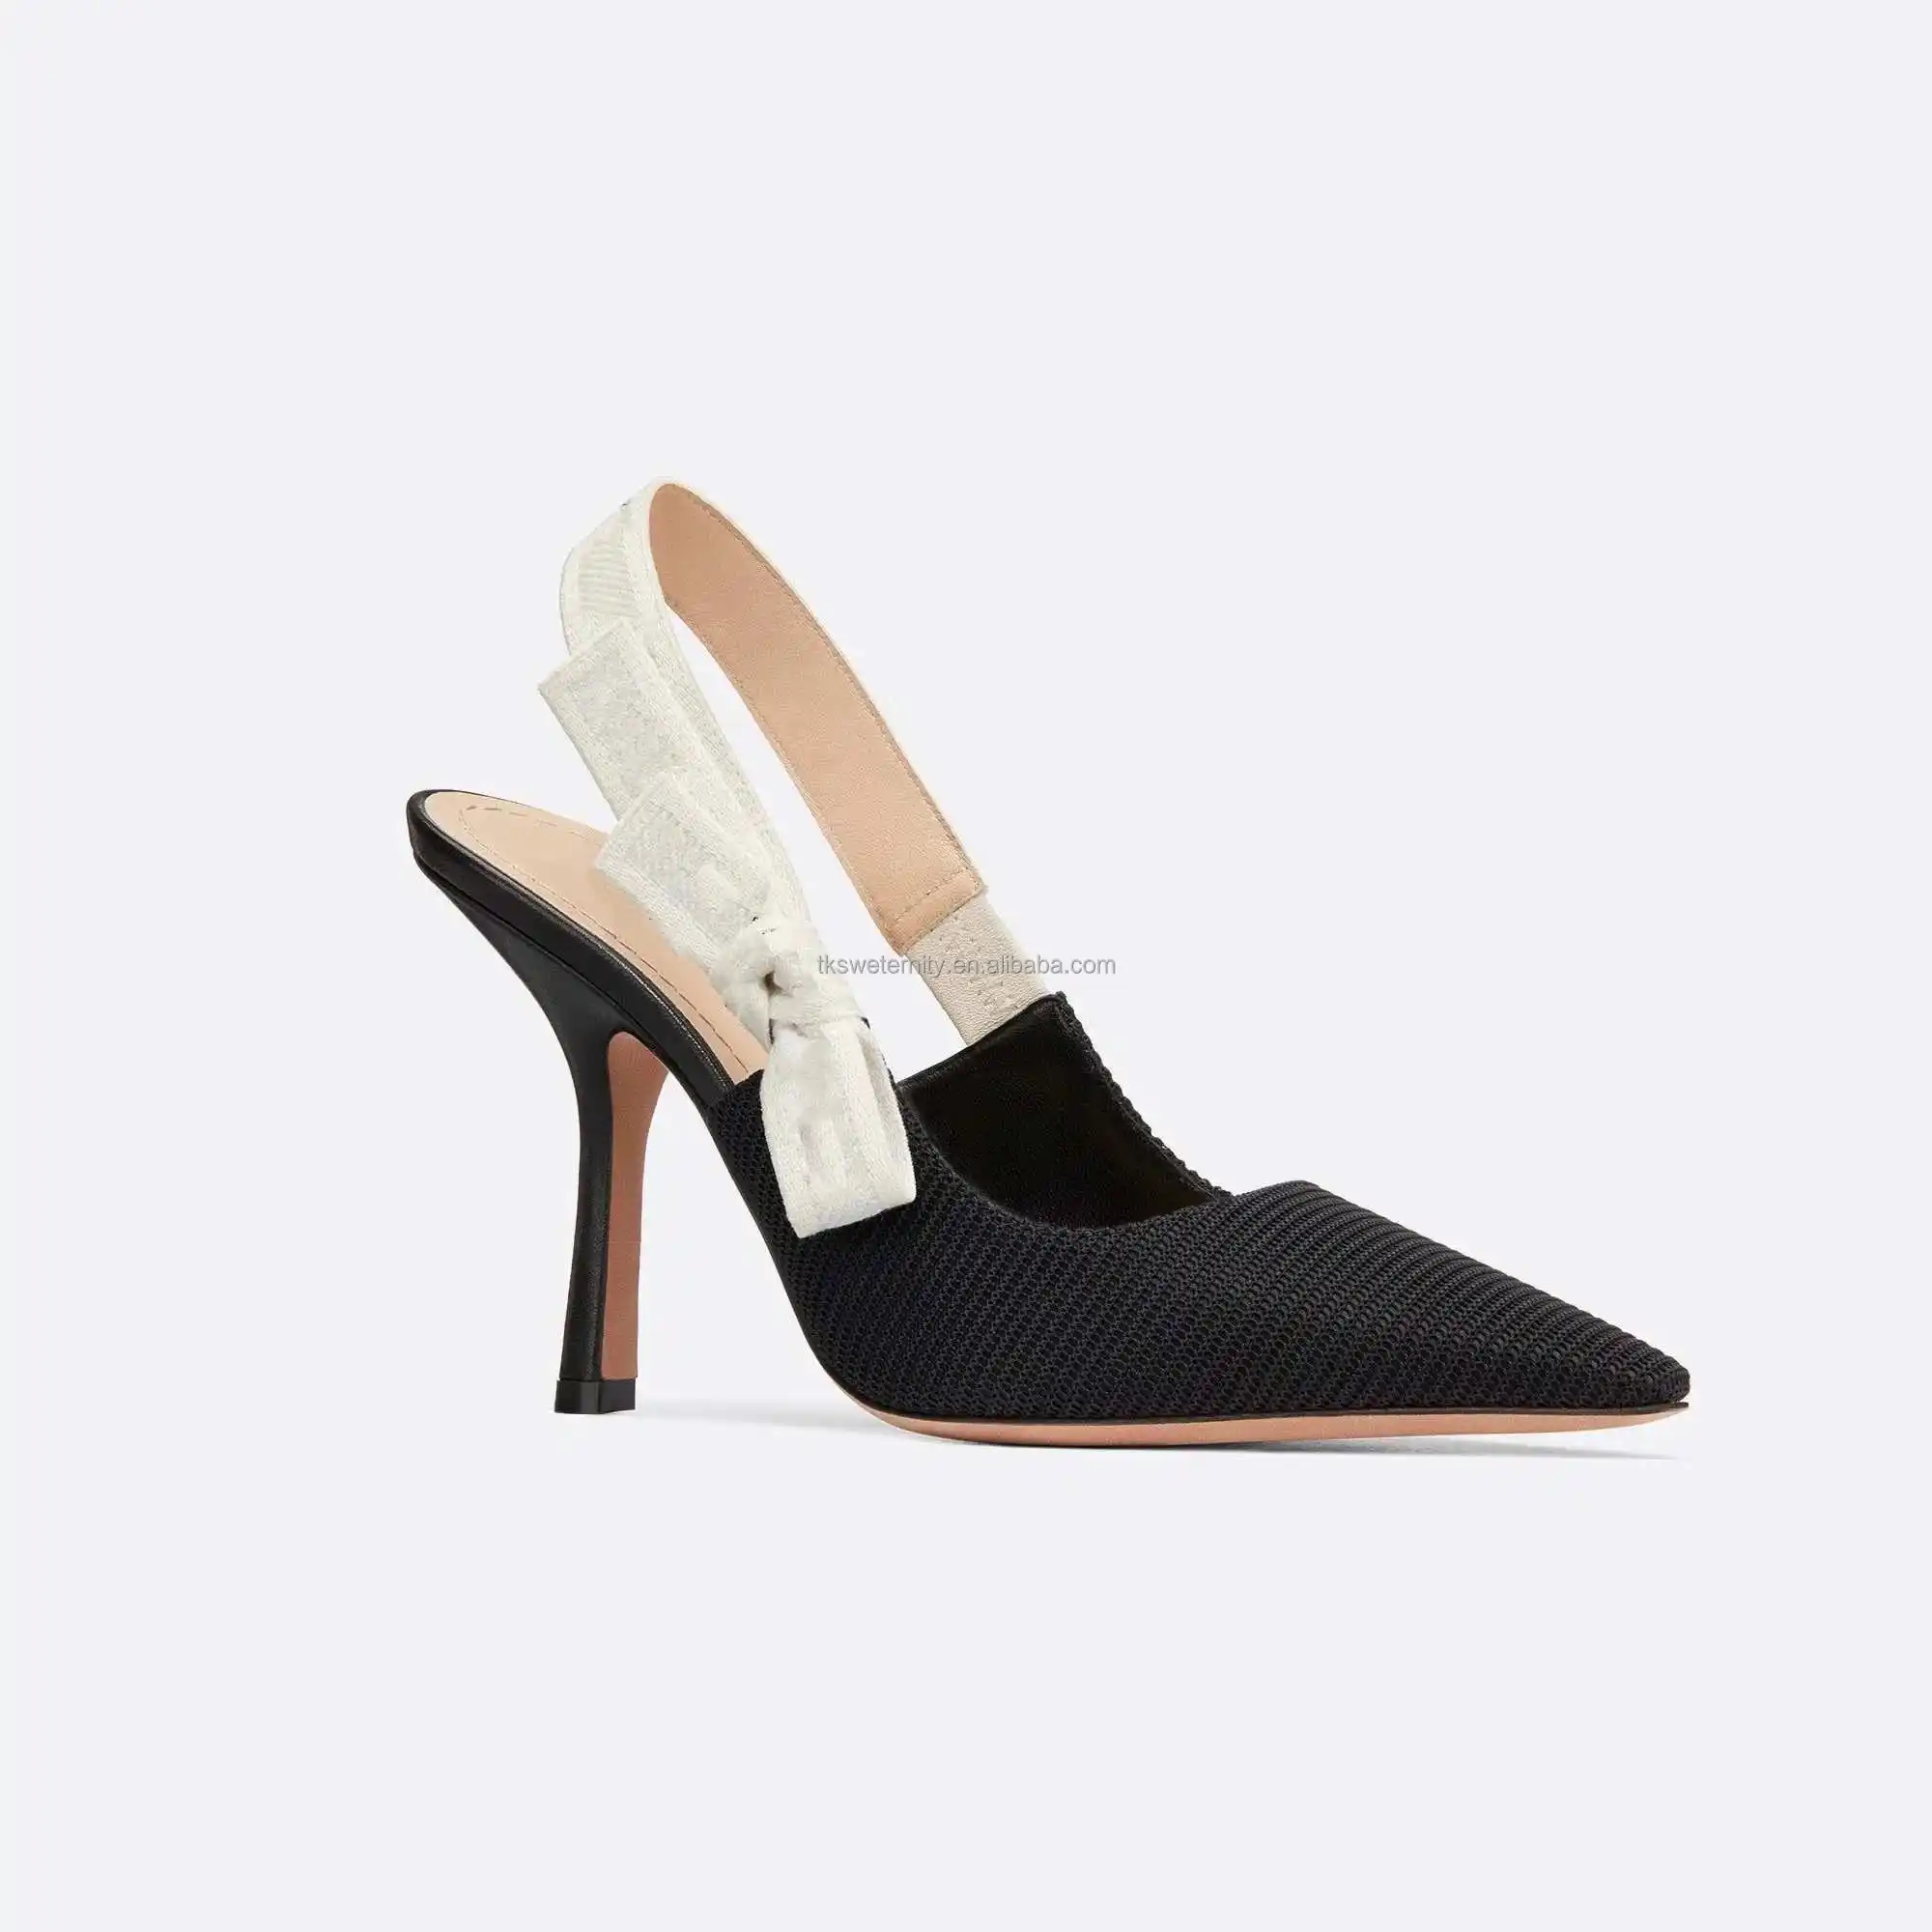 Zapatos de tacón de piel de becerro de alta calidad, sandalias de diseño de lujo de punto bordadas en negro, Sandalias de tacón con correa trasera para mujeres y niñas